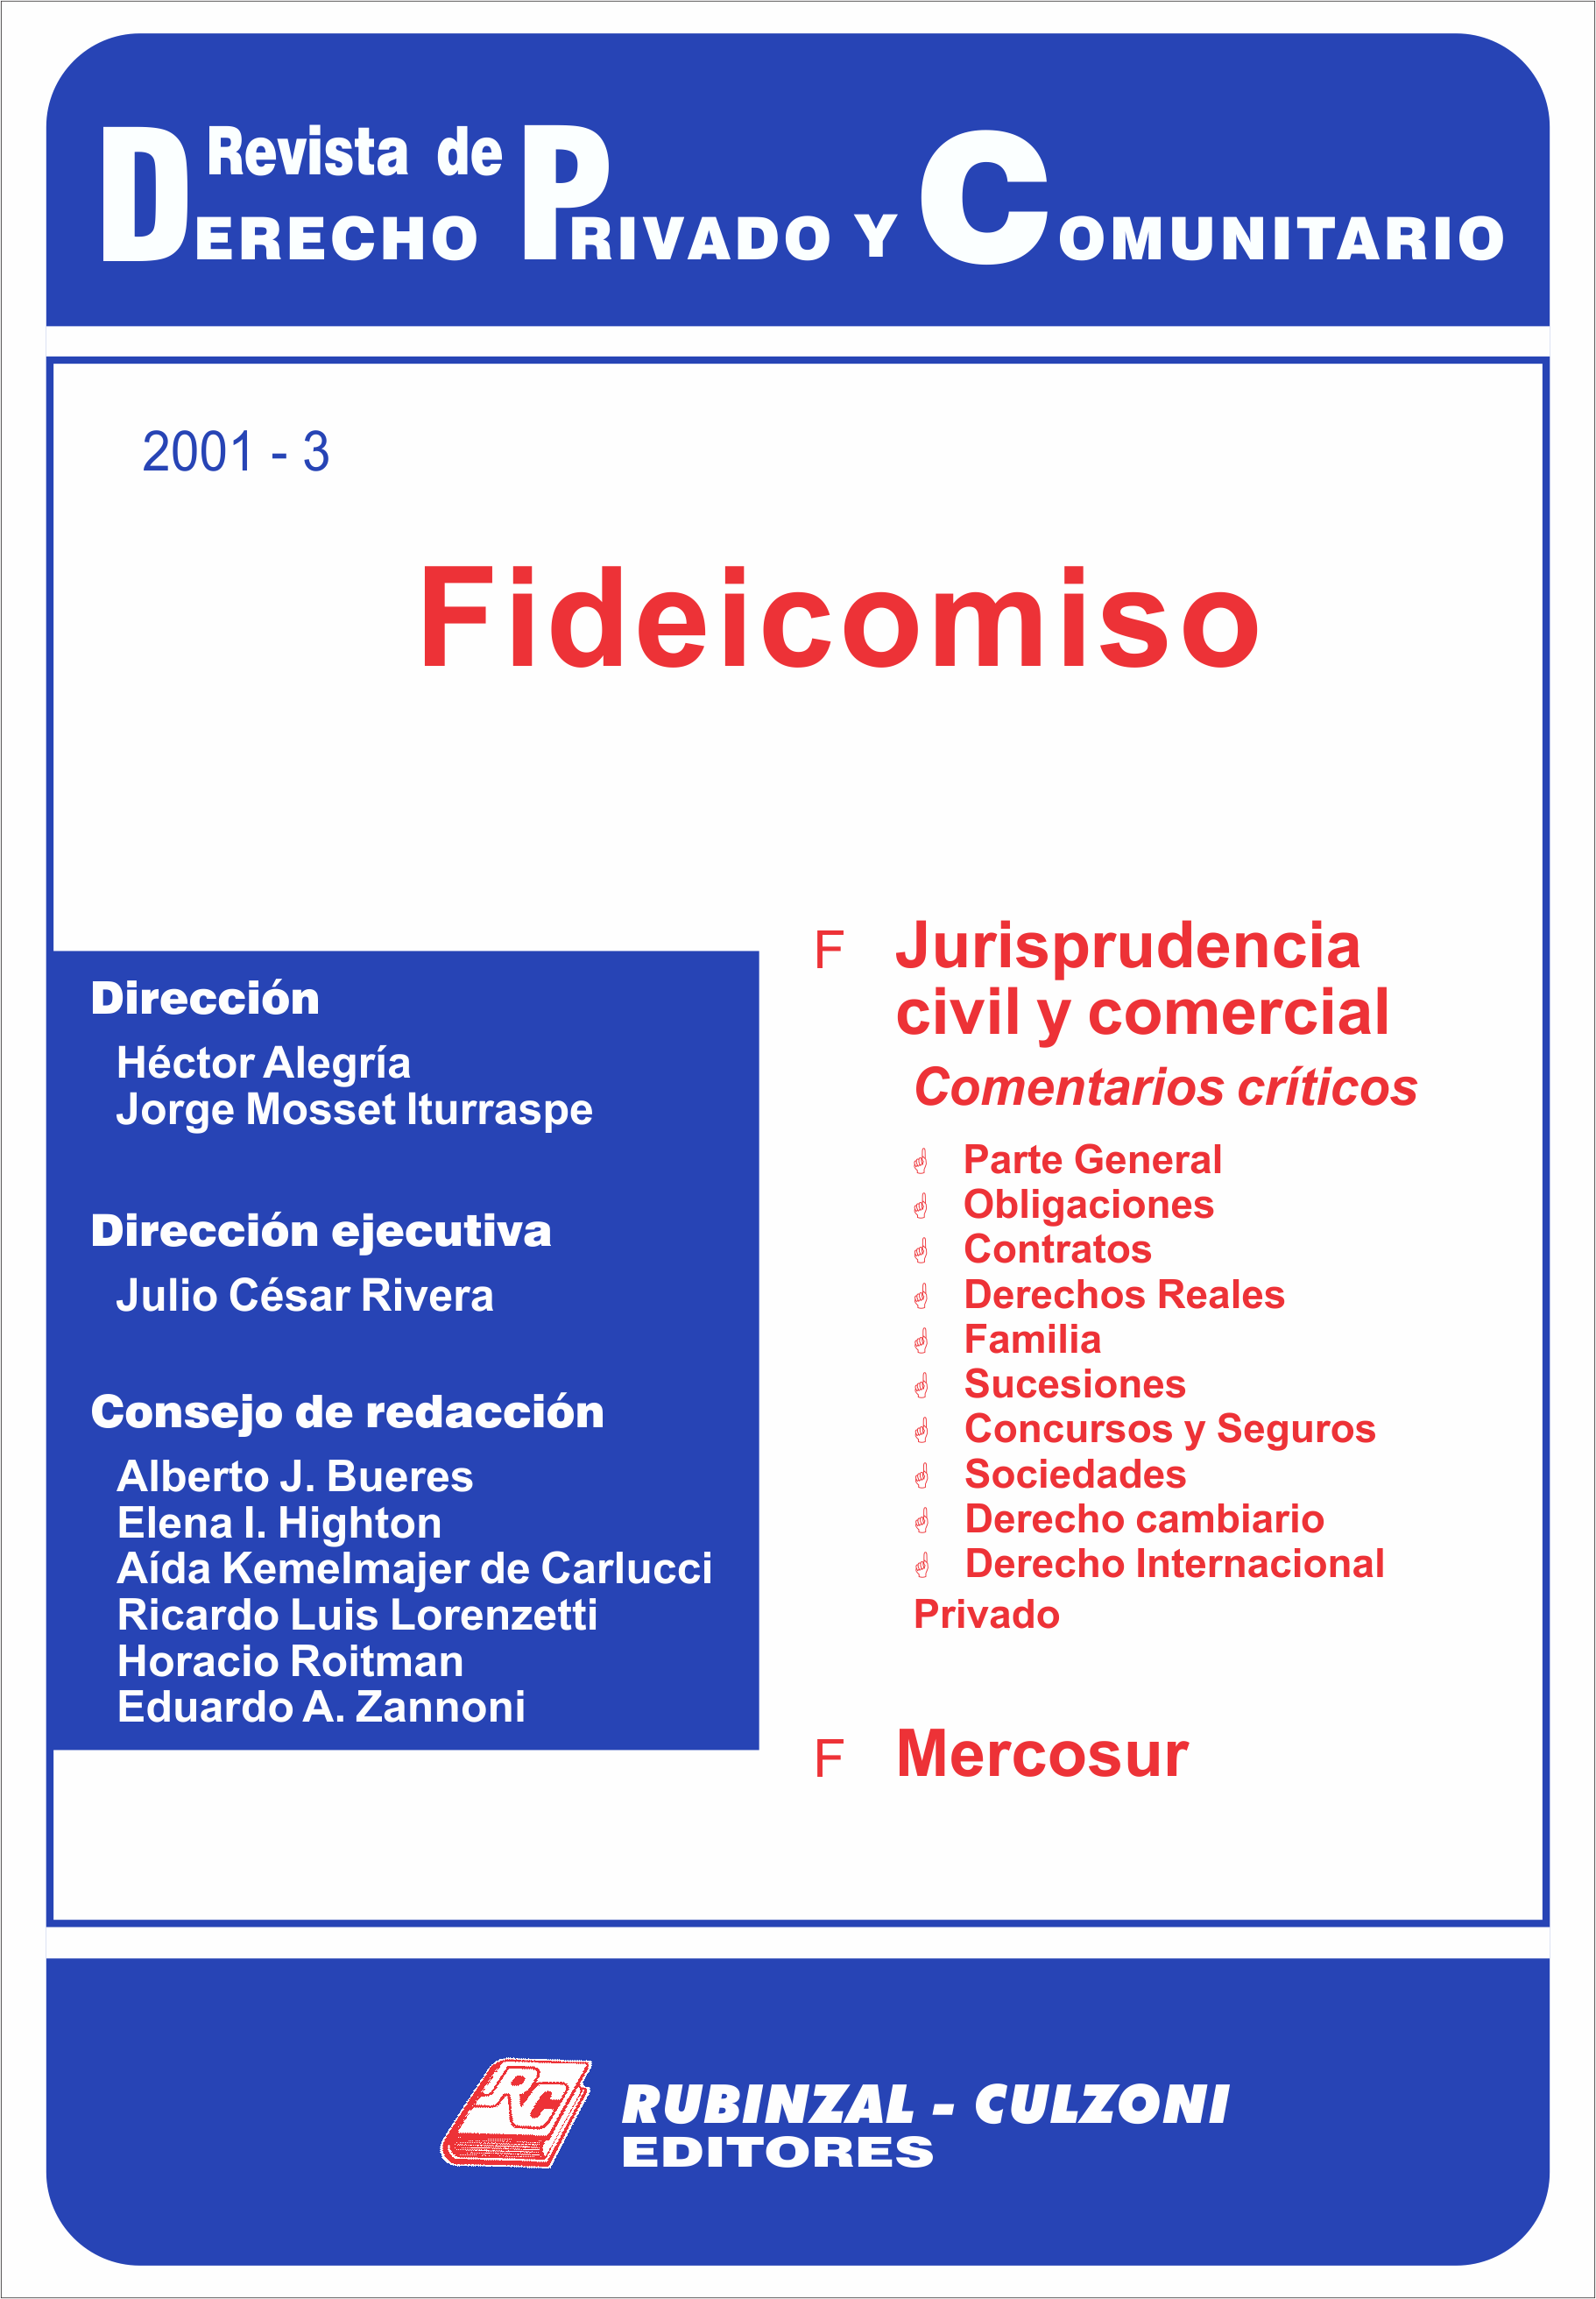 Revista de Derecho Privado y Comunitario - Fideicomiso